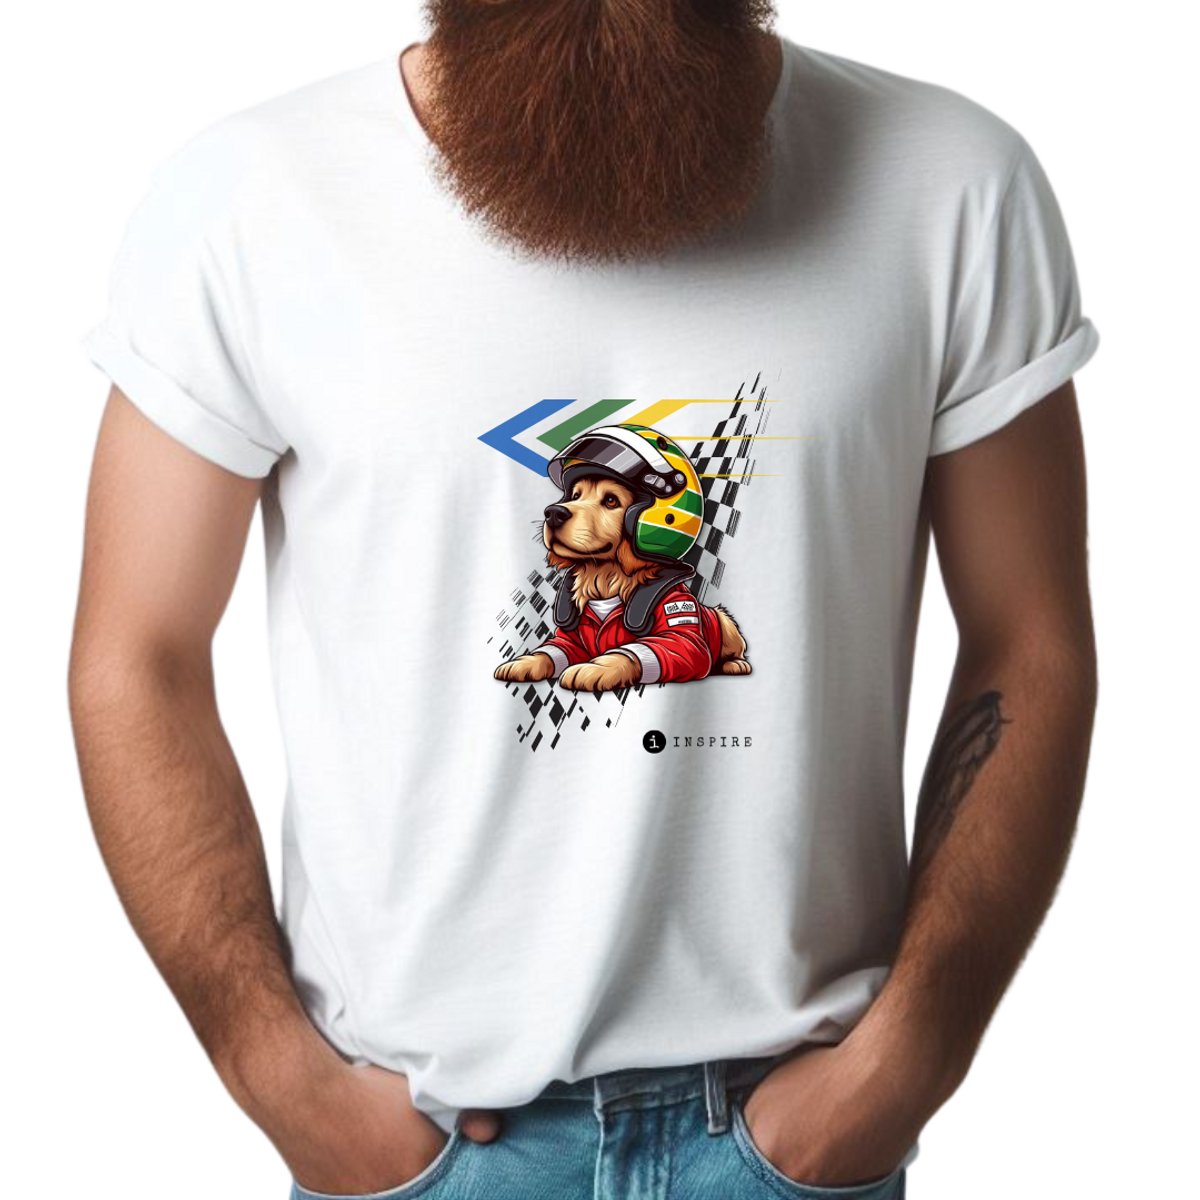 Nome do produto: Camiseta Inspire Senna - Classic (w)